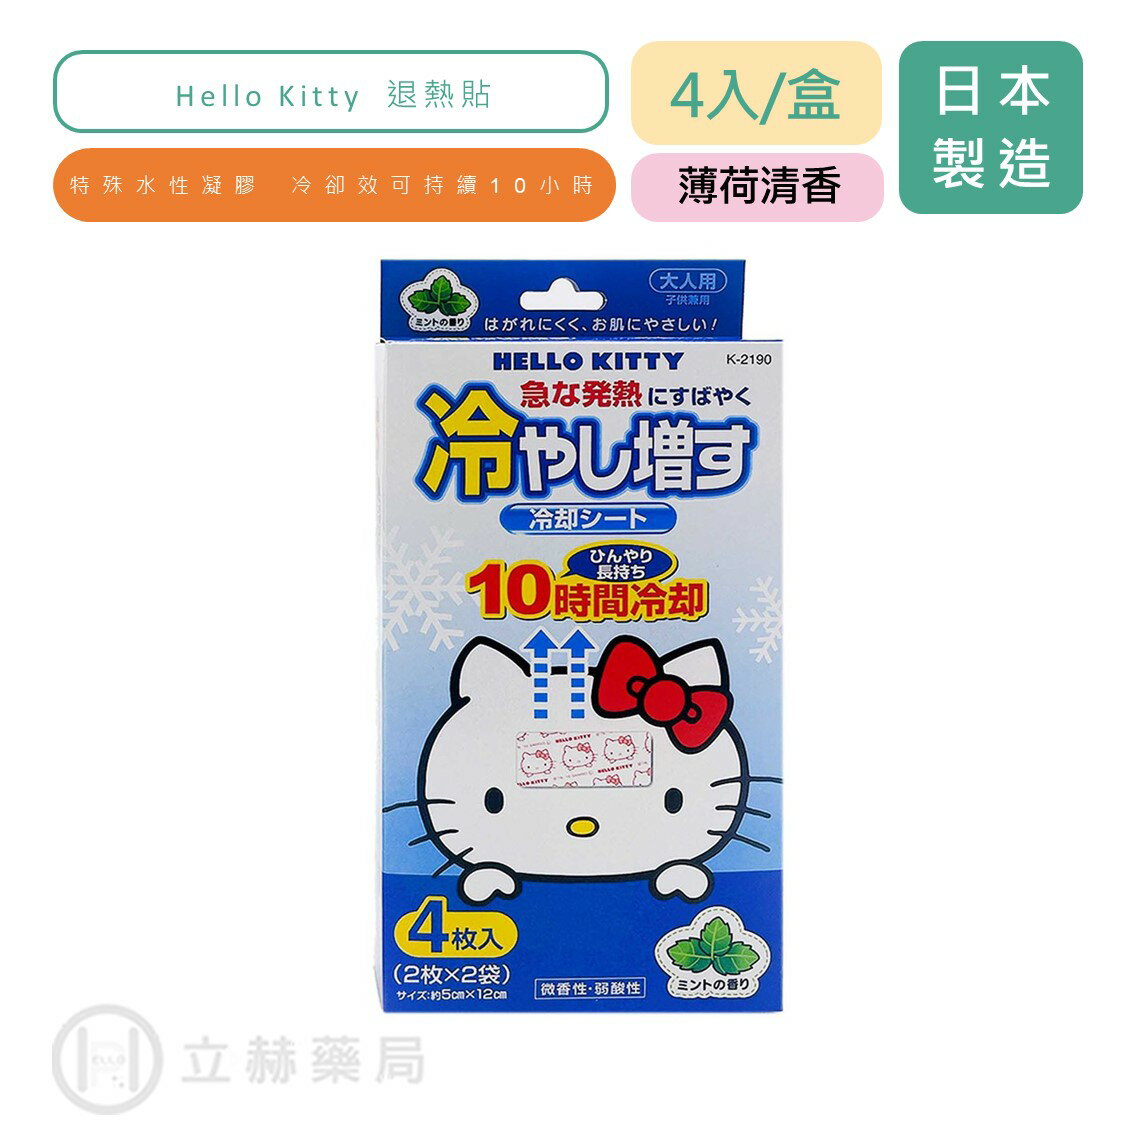 日本 KOKUBO 小久保 紀陽 Hello Kitty 退熱貼 薄荷清香 (未滅菌) 4入/盒 (2枚 X 2袋) 【立赫藥局】